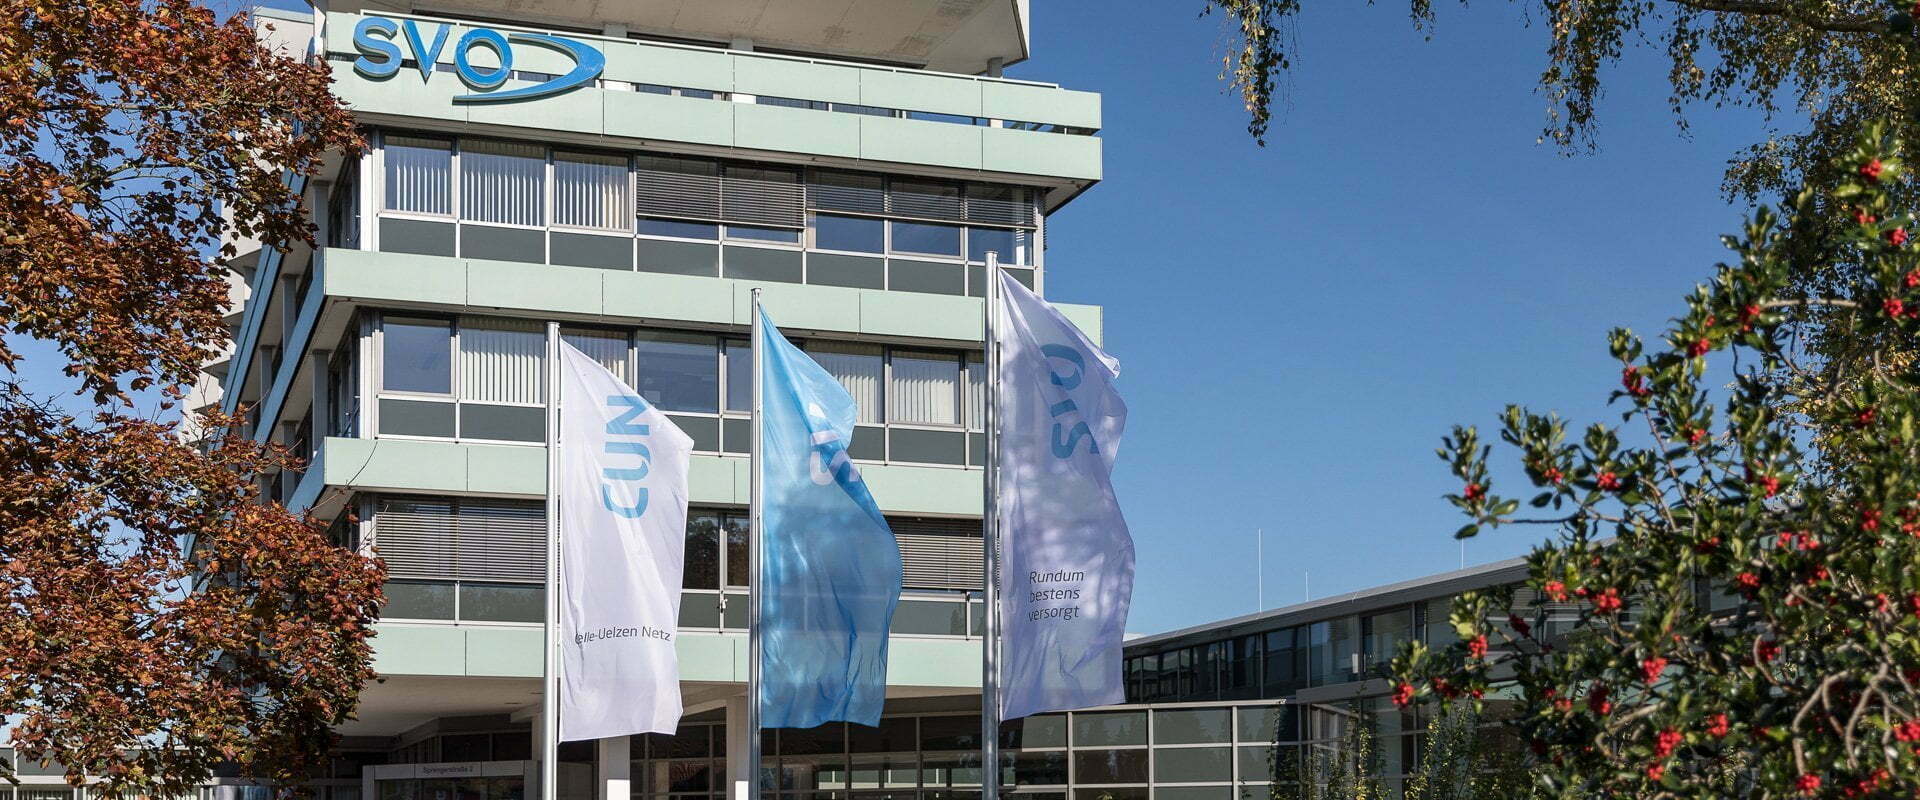 Firmensitz der SVO Celle-Uelzen Netz GmbH, eine Kundenreferenz der EASY SOFTWARE